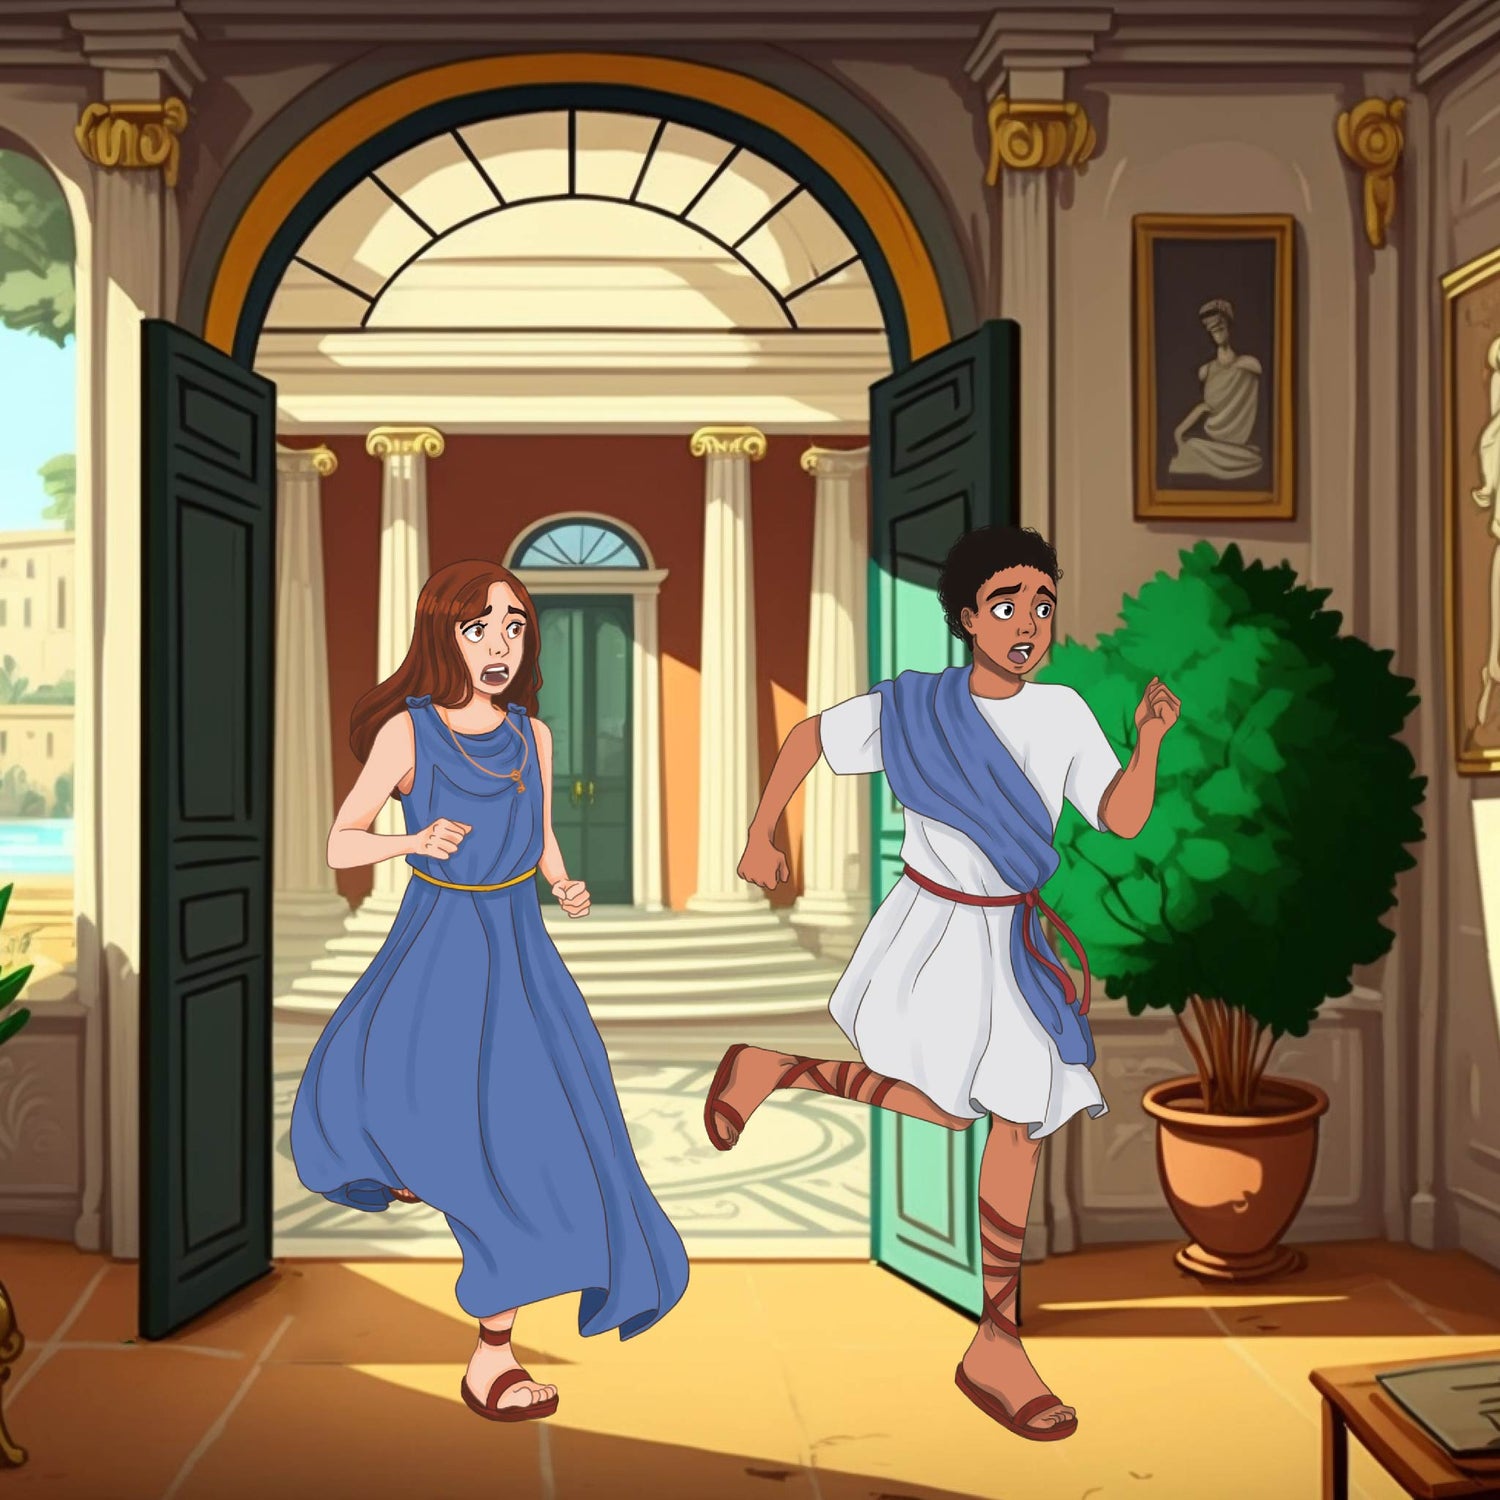 Aria & Liam running in their adventure "Enigma in Rome"